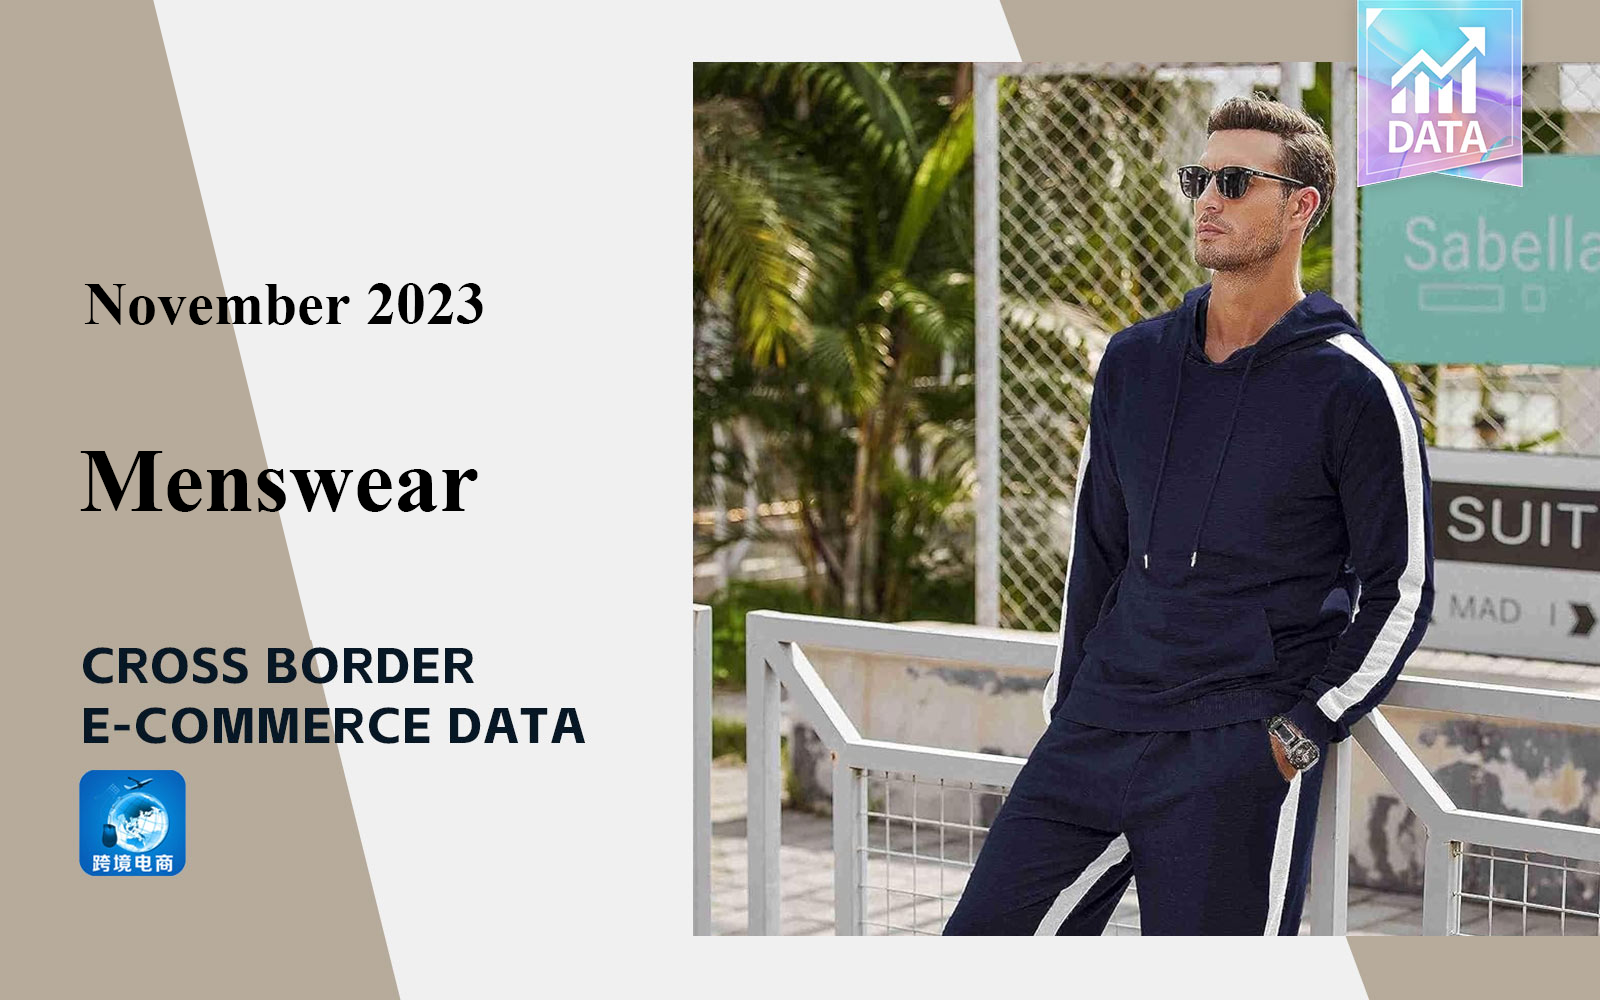 Data Analysis of Cross-border E-commerce for Menswear in November